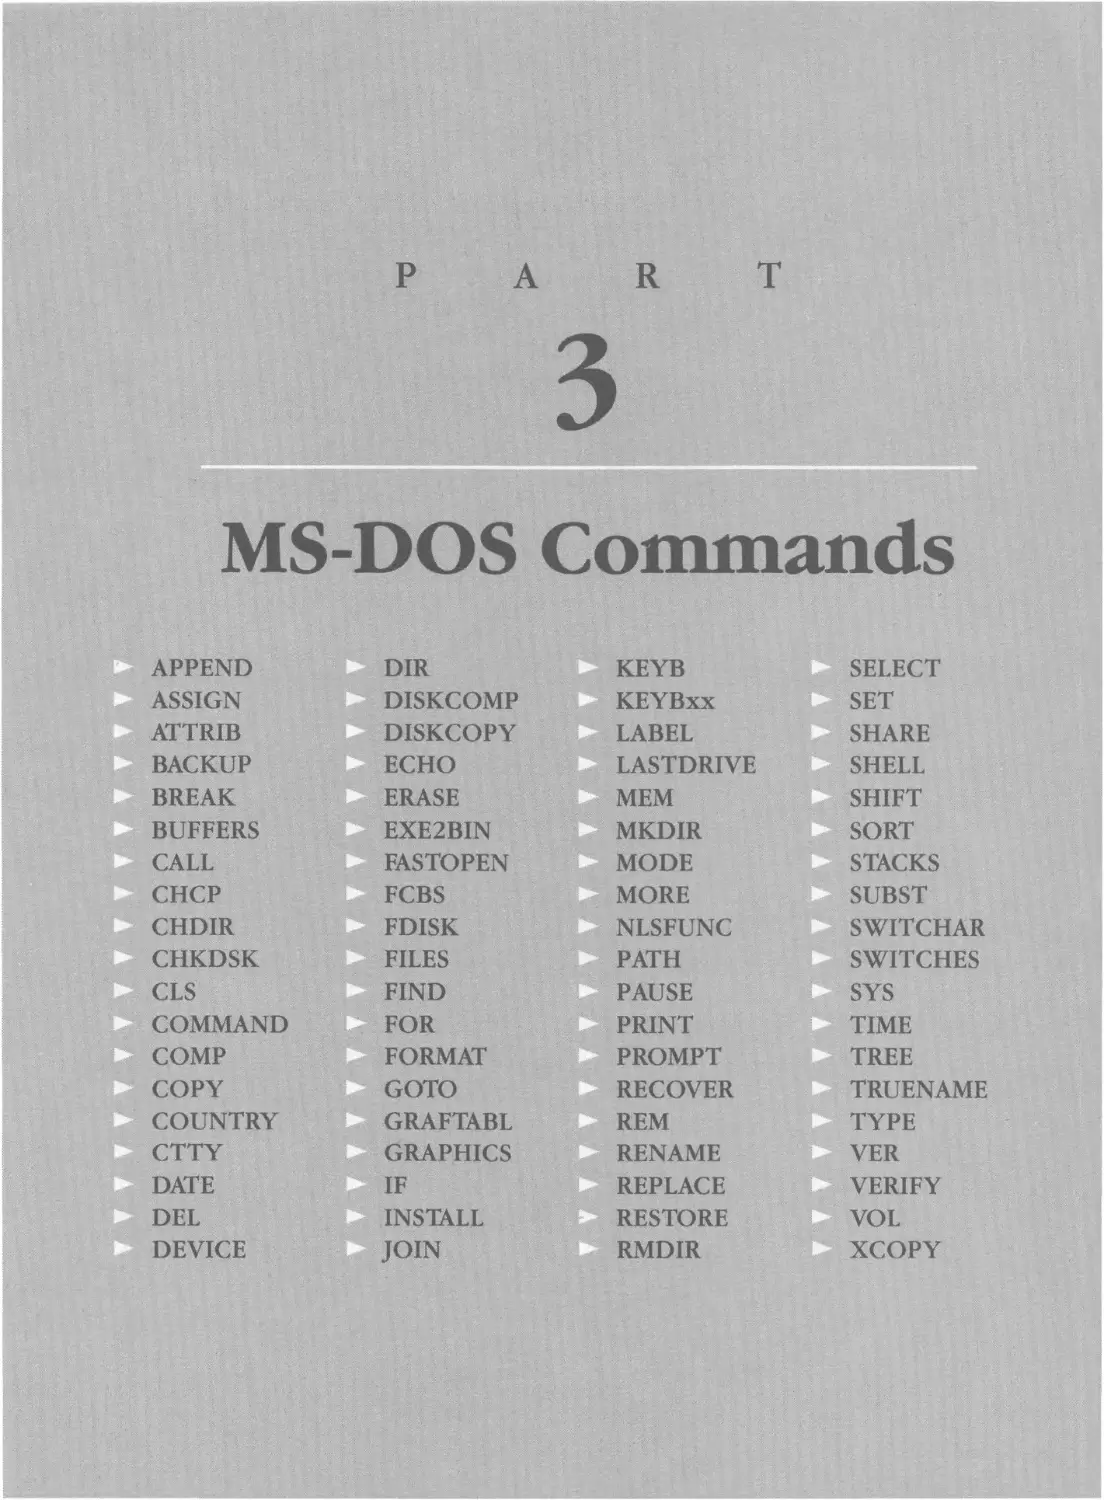 ---- PART 3 ---- MS-DOS Commands